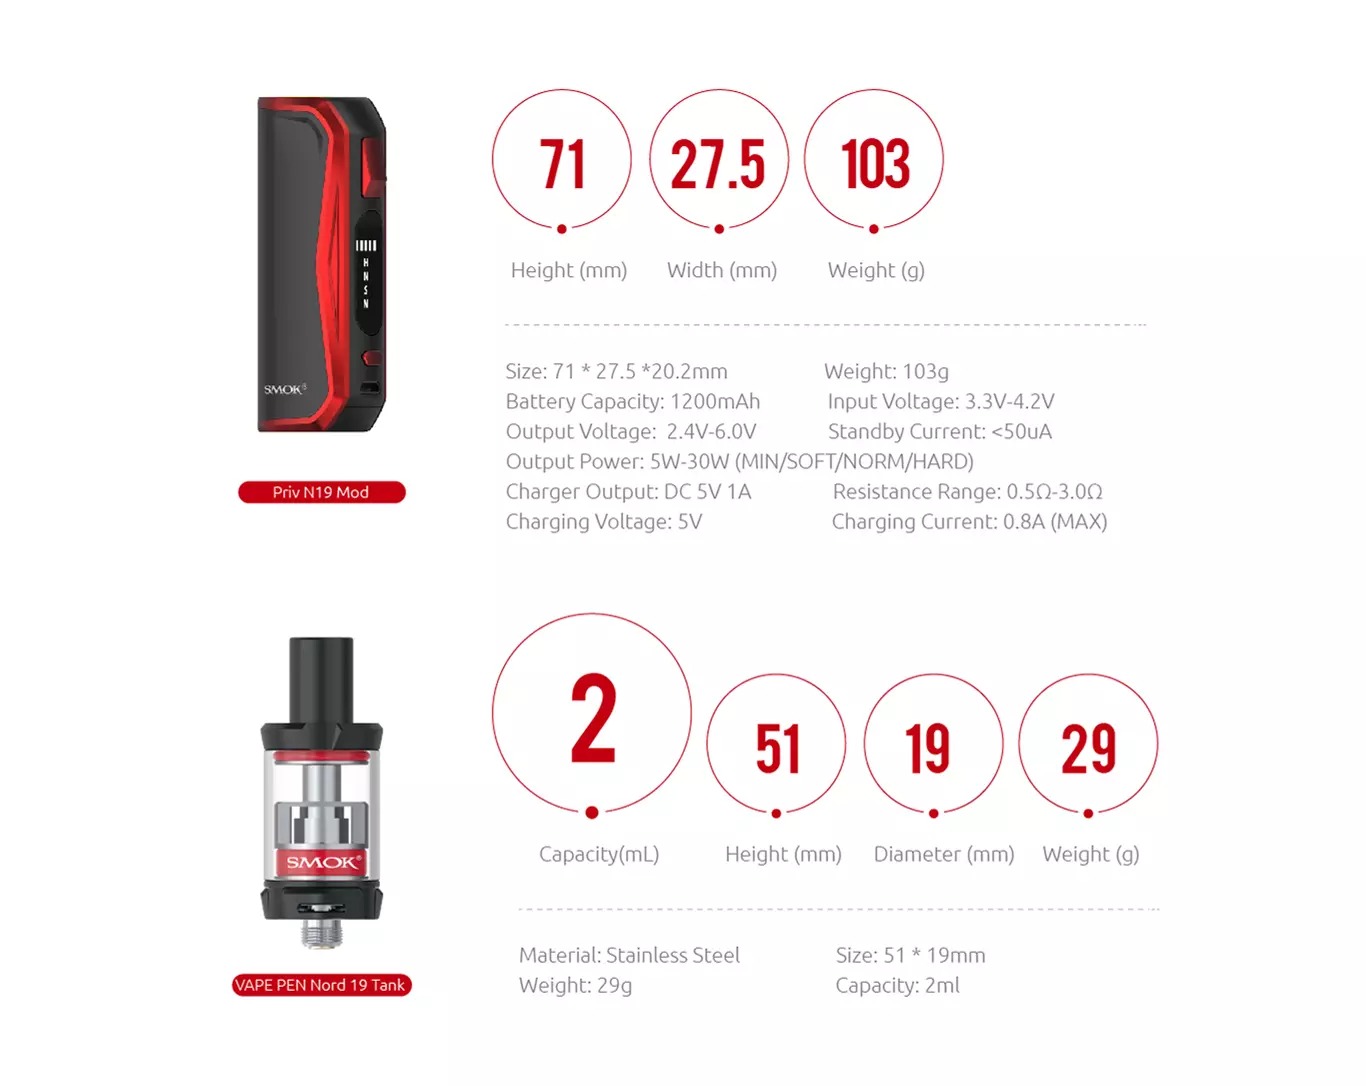 Smok Priv N19 Vape Kit Specifications